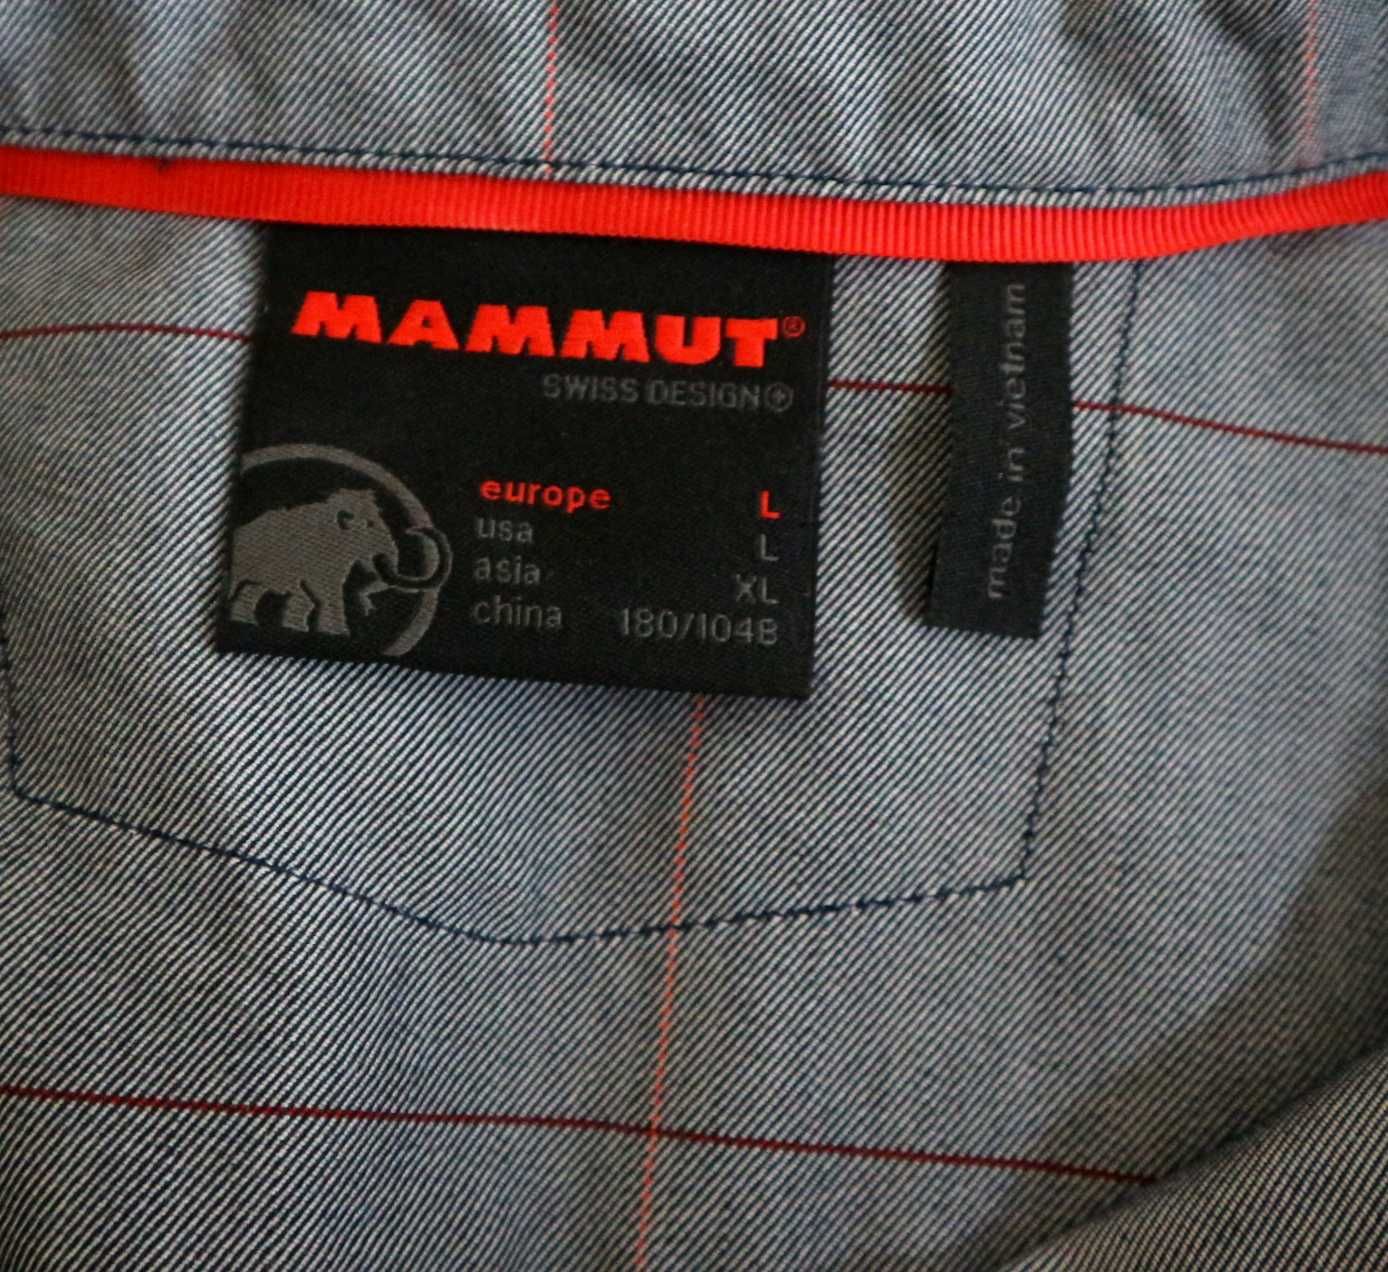 Mammut Alvra LS koszula turystyczna outdoorowa rozmiar L